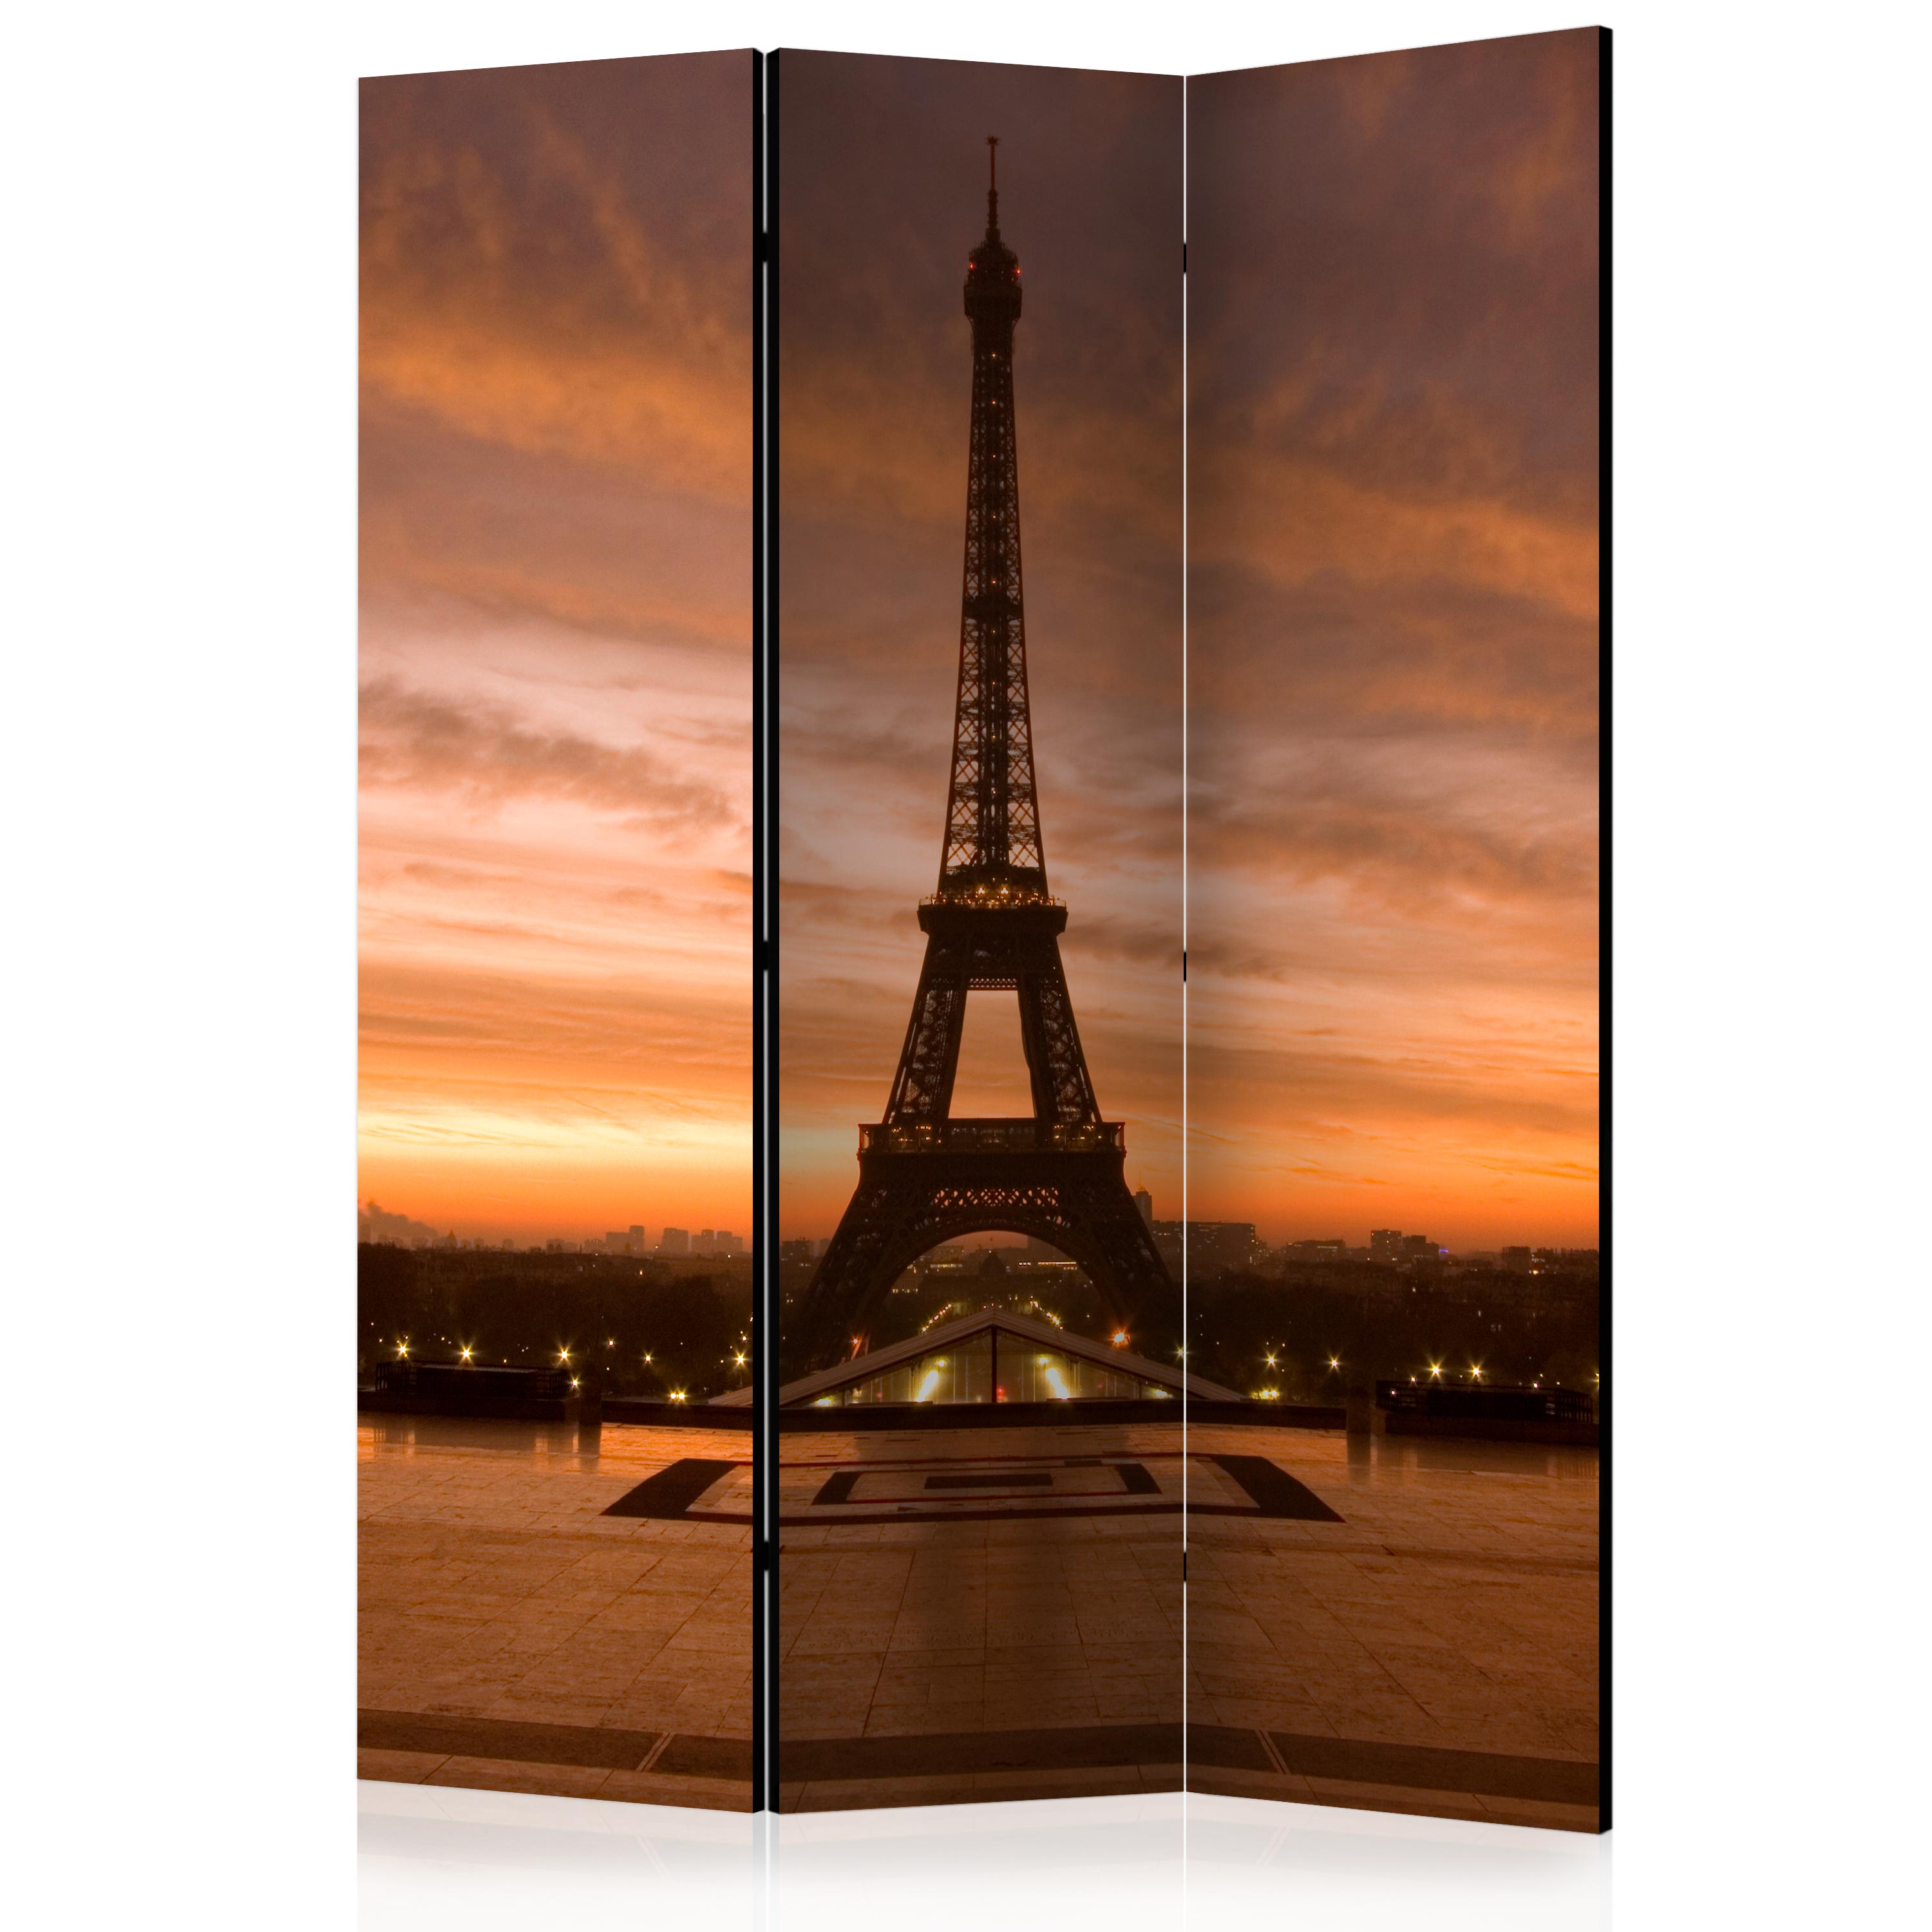 Paravan Artgeist, Eiffel tower at dawn, 3 parti- 1.35 x 1.72 m